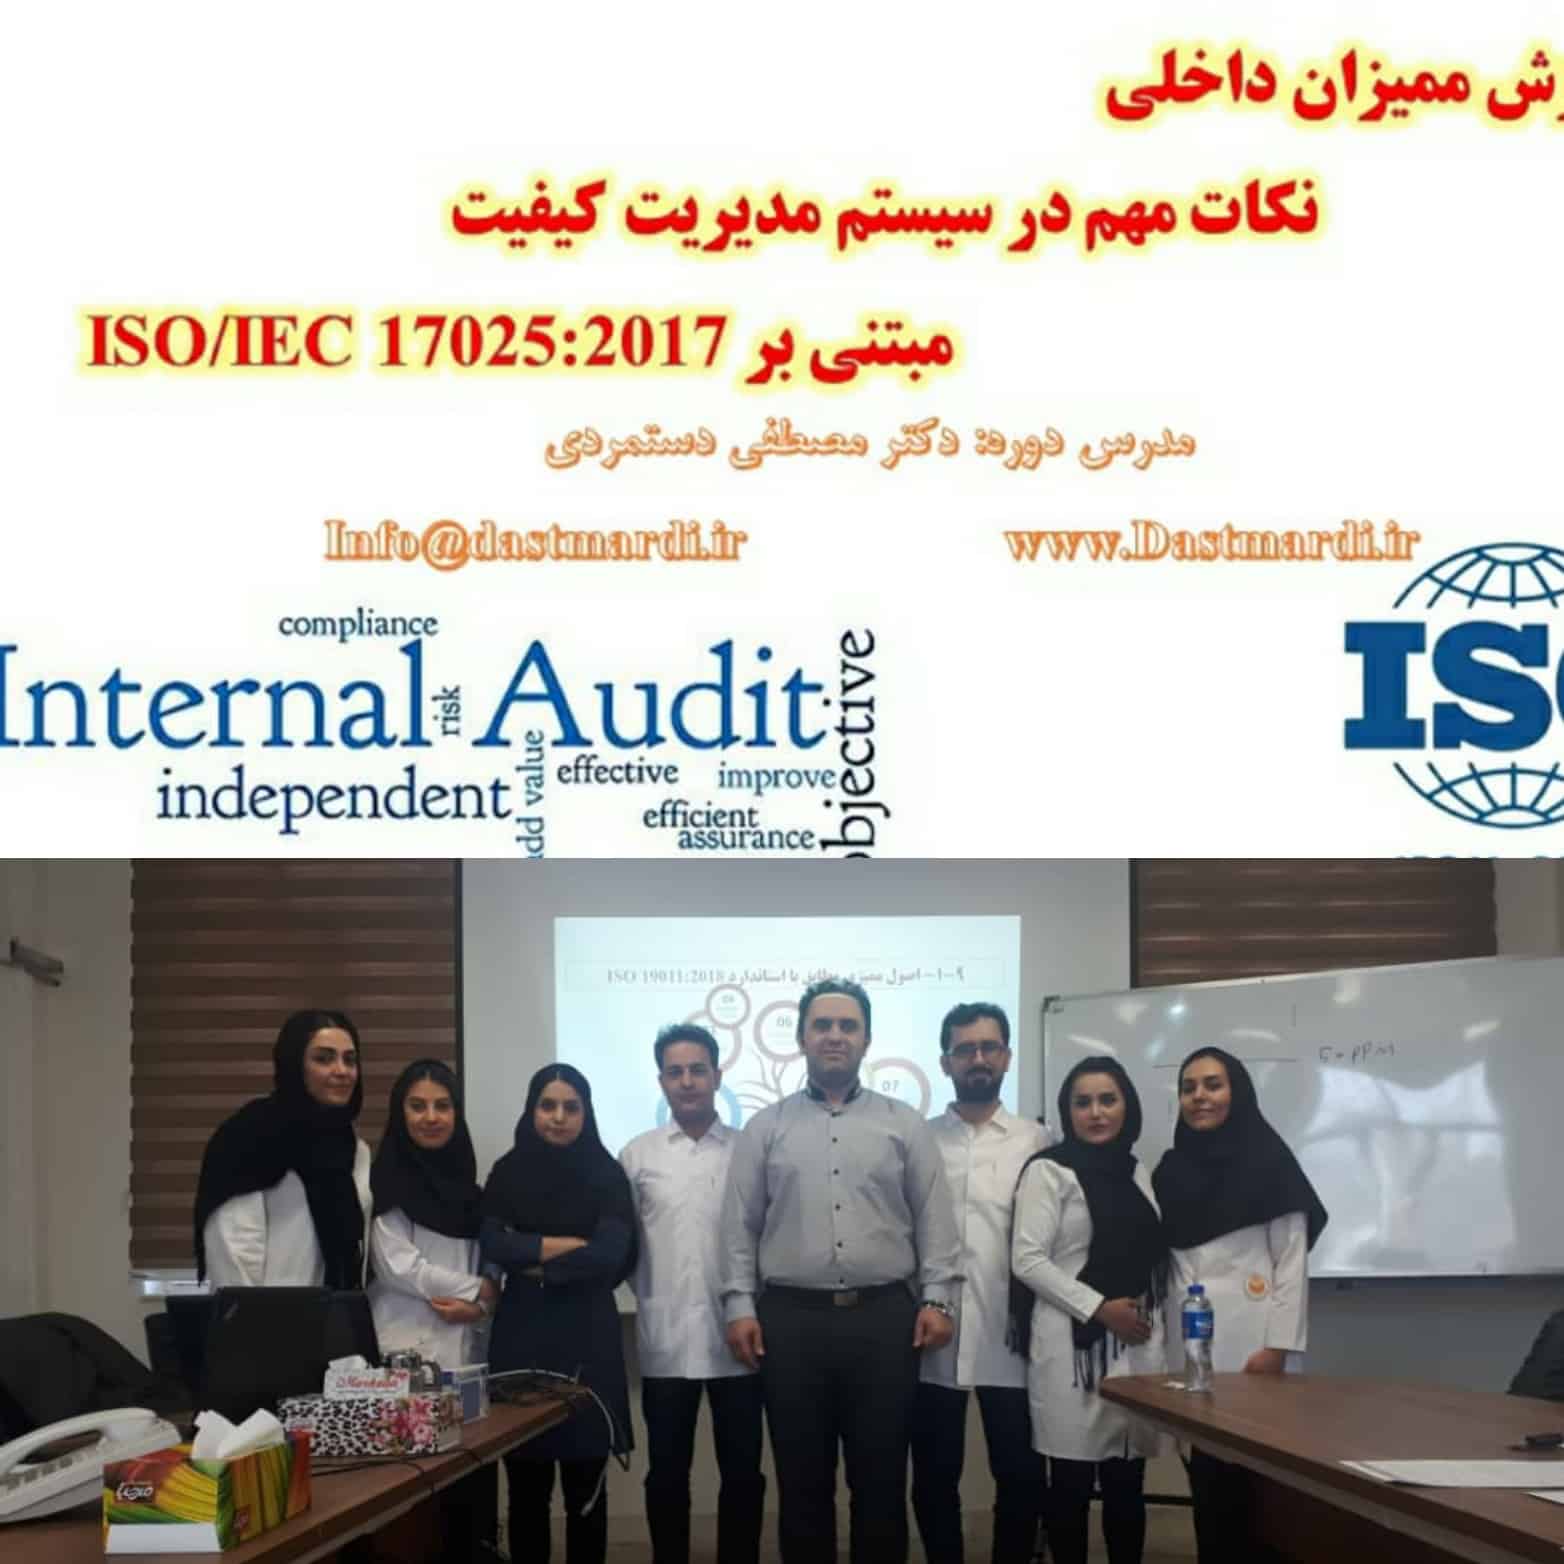 IMG 20200218 155015 برگزاری دوره آموزشی ممیزی داخلی مراکز آزمایشگاهی مبتنی بر استاندارد ISO/IEC 17025:2017 در شرکت عالیفرد (سن ایچ)